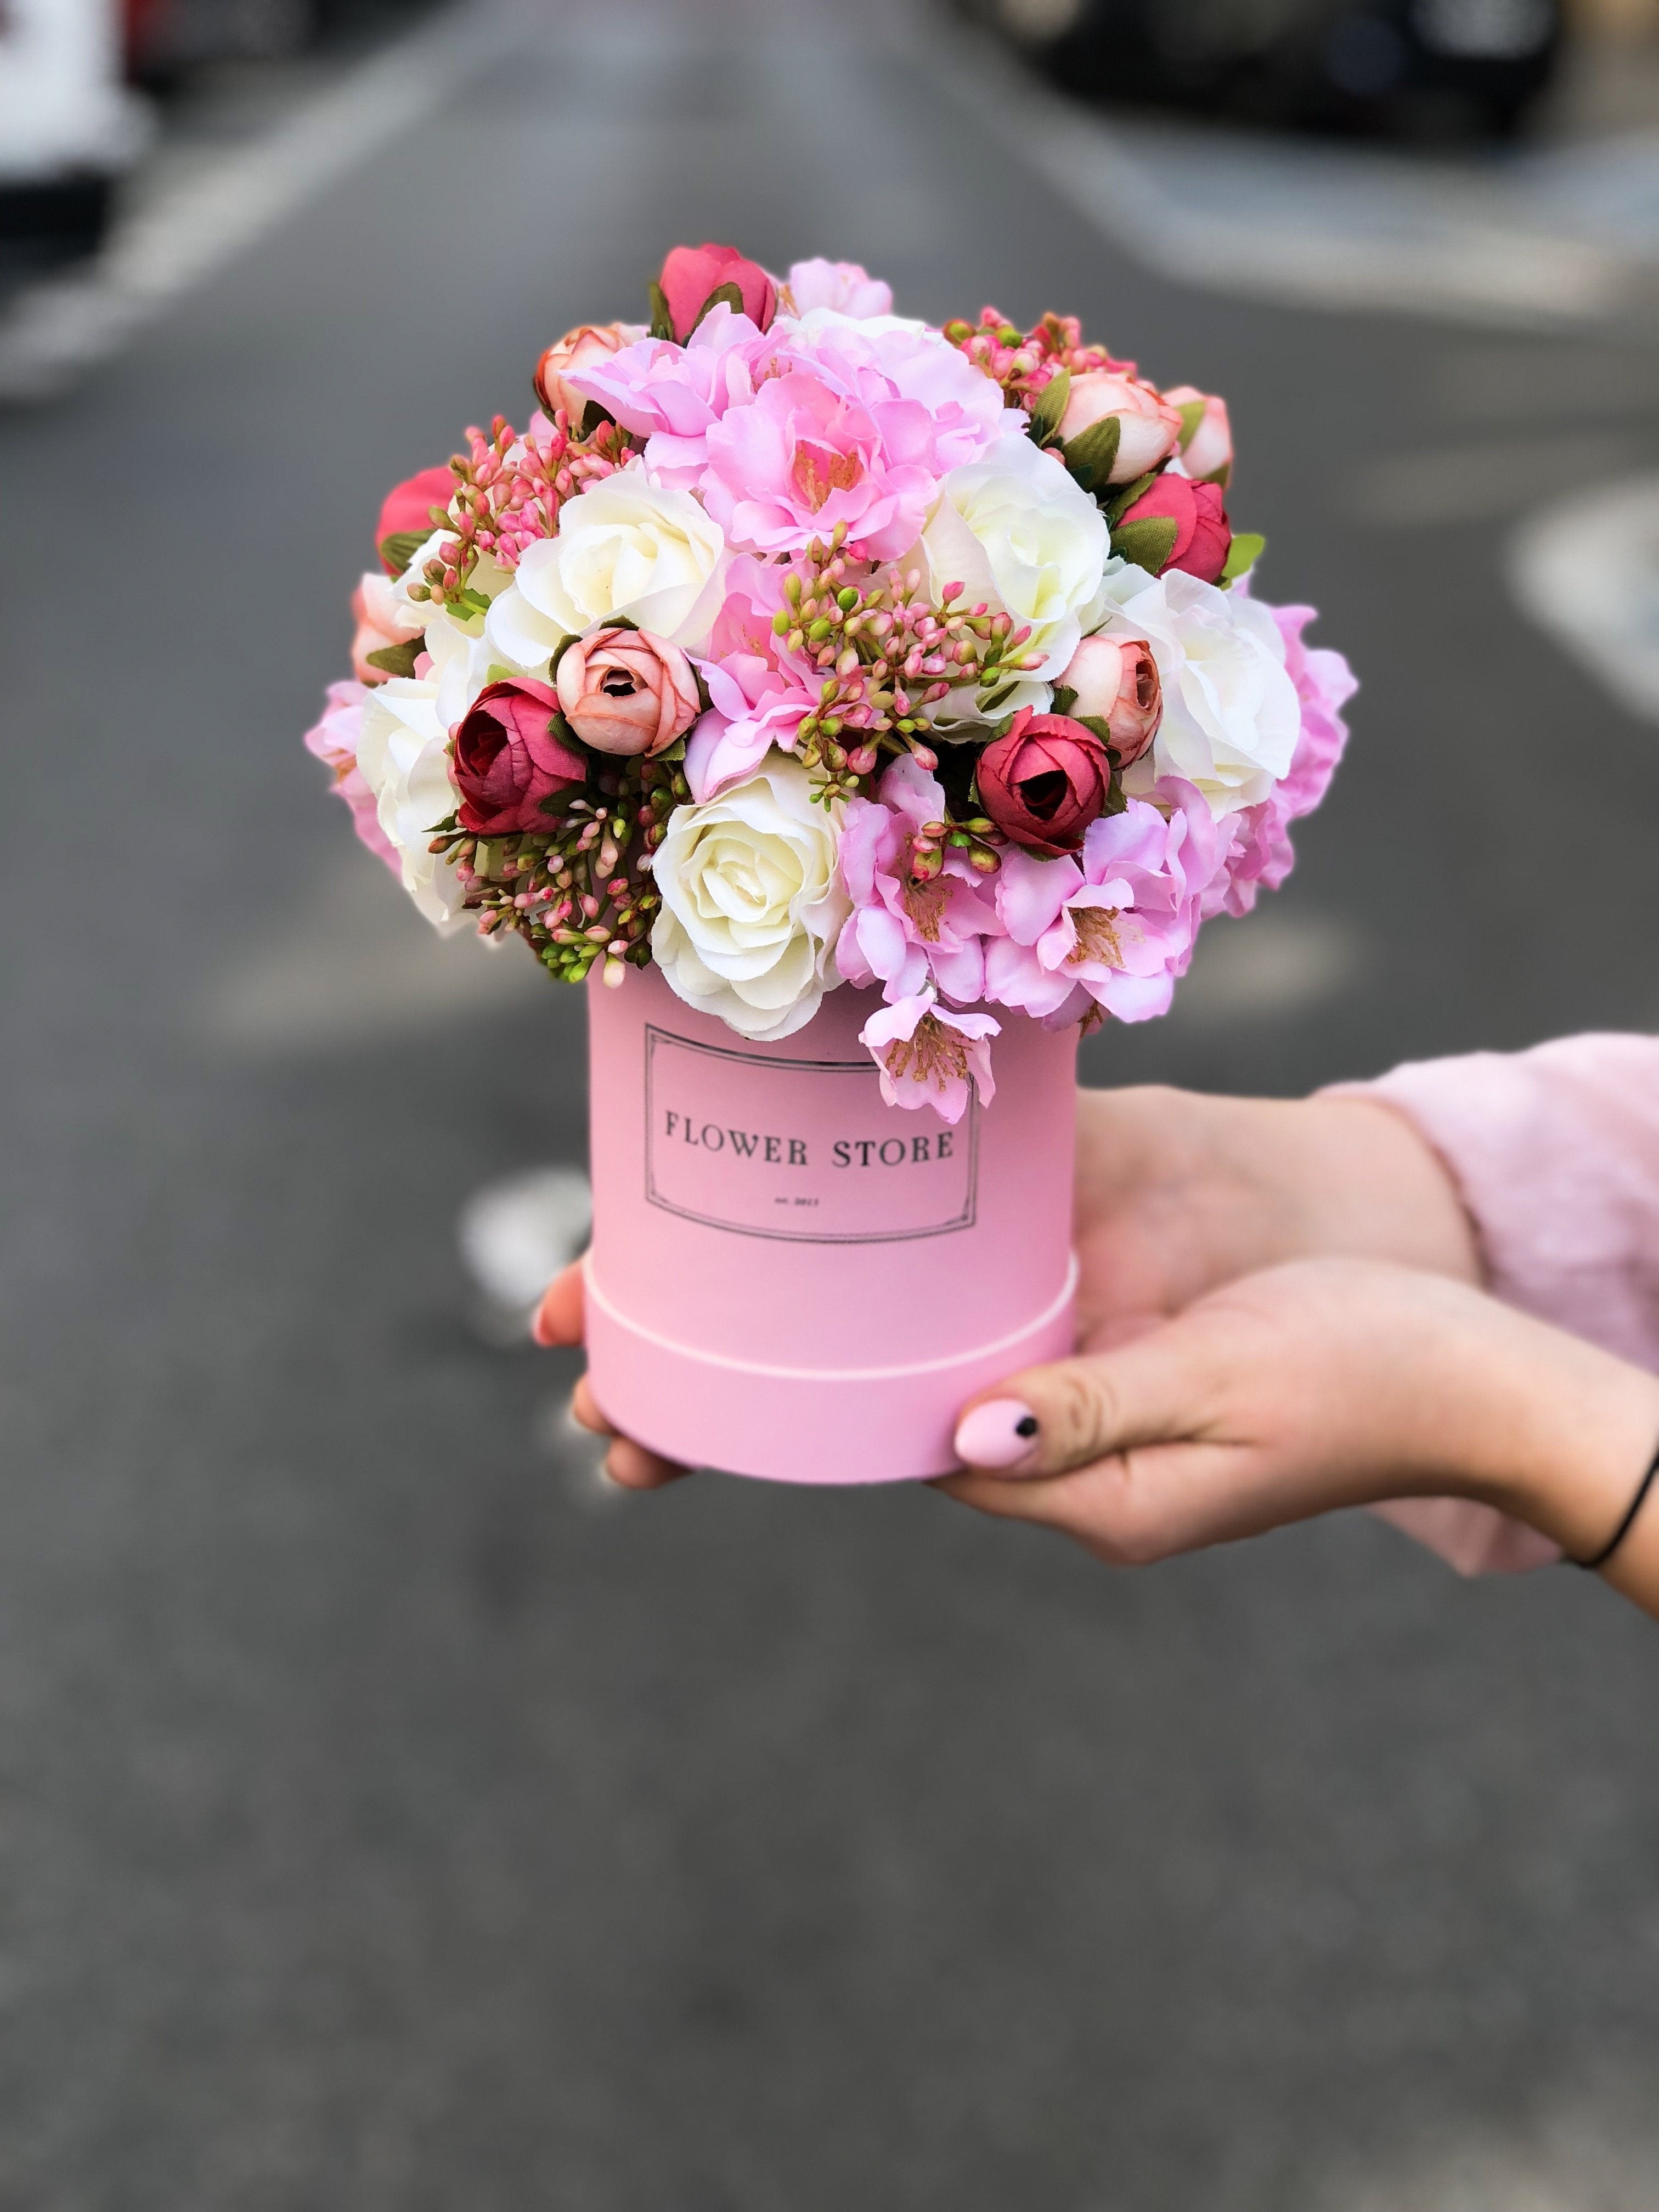 Небольшая розовая коробочка с весенней композицией - искусственные цветы.